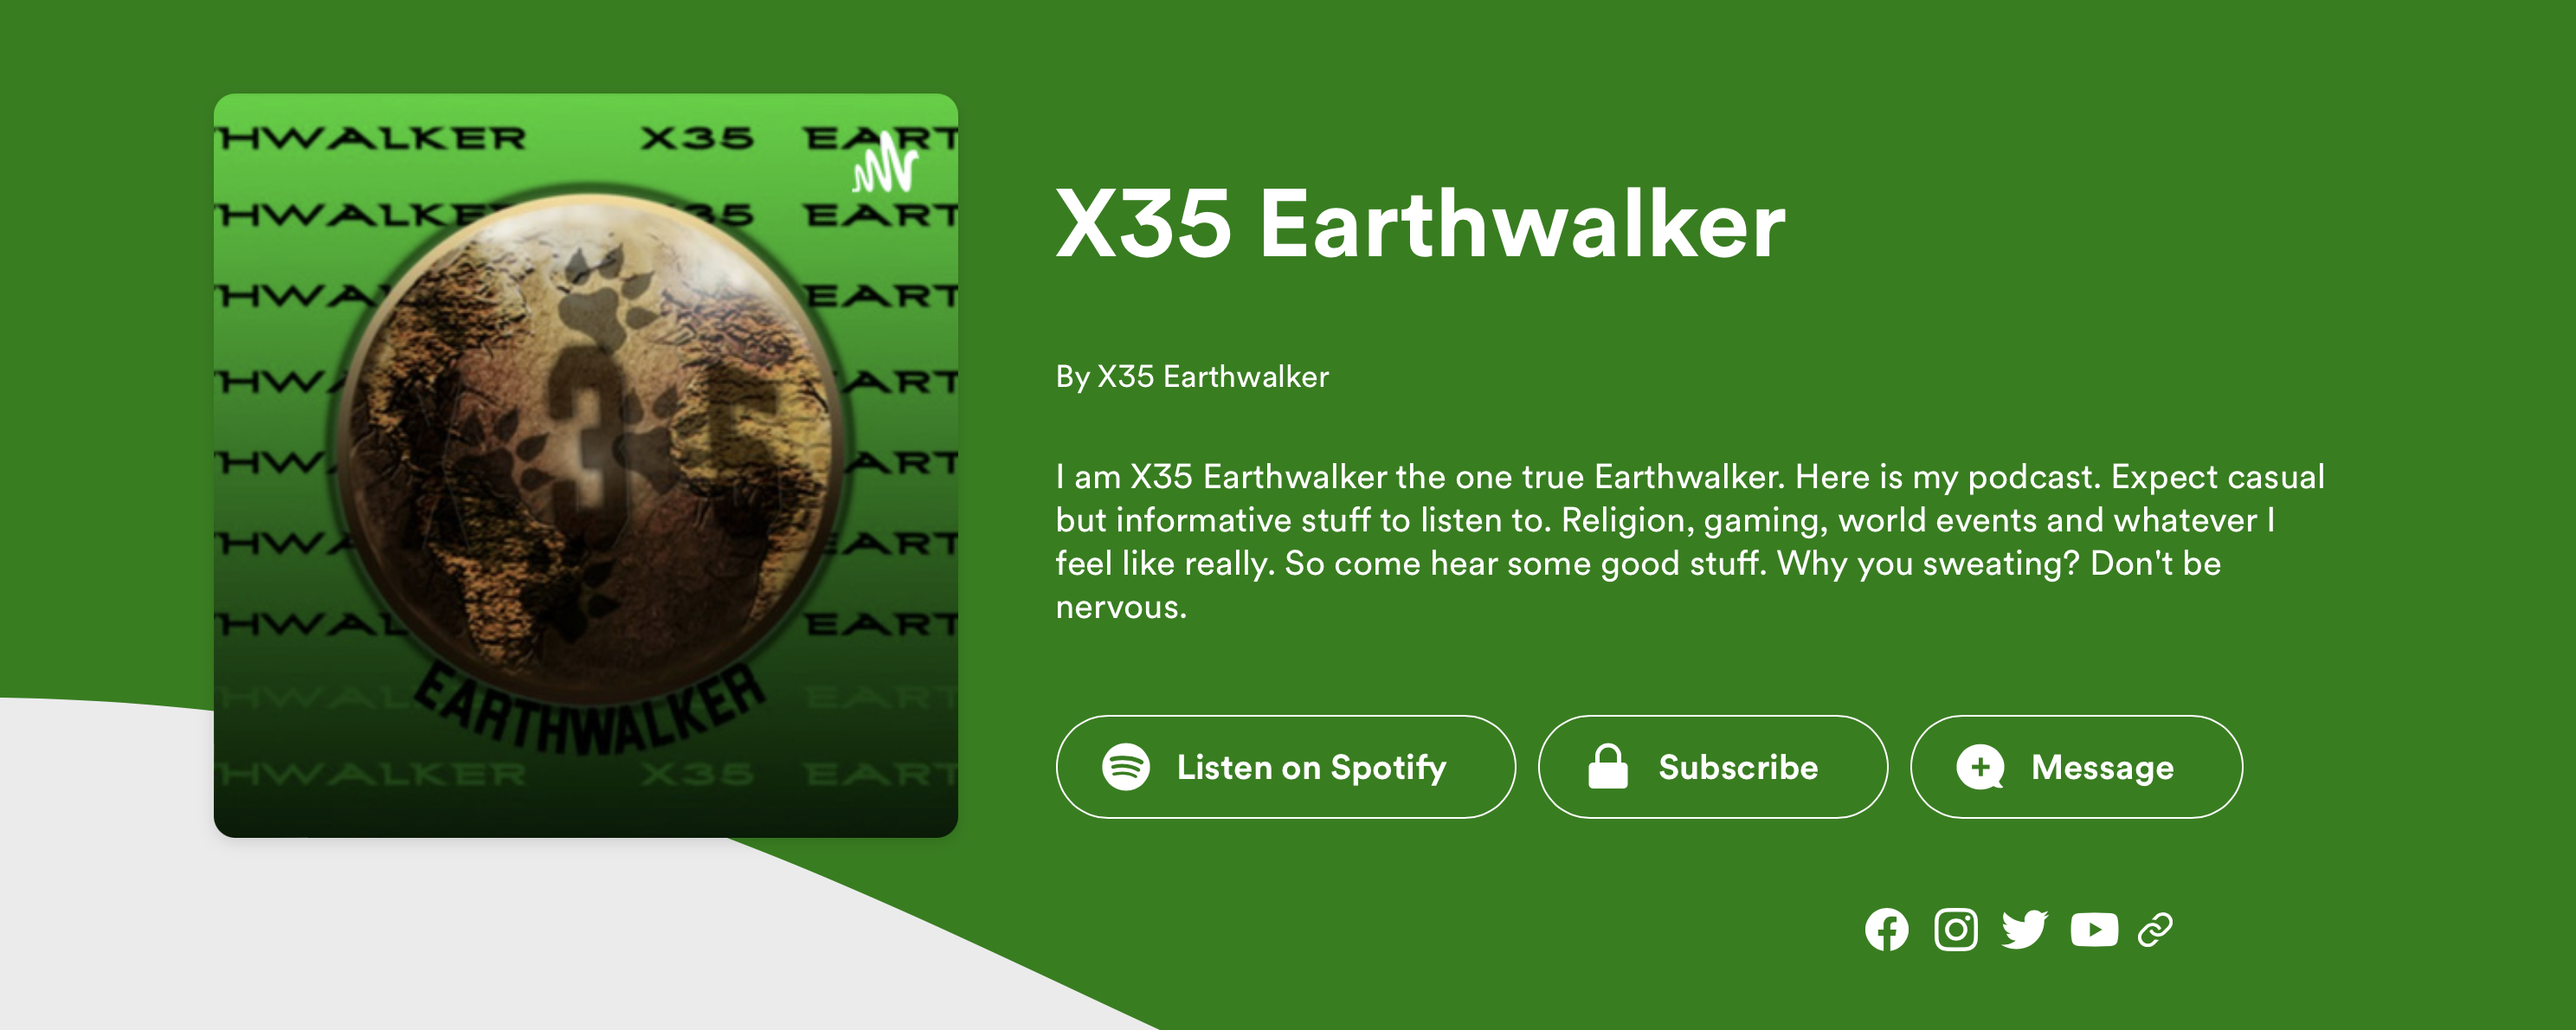 Podcast channel X35 Earthwalker